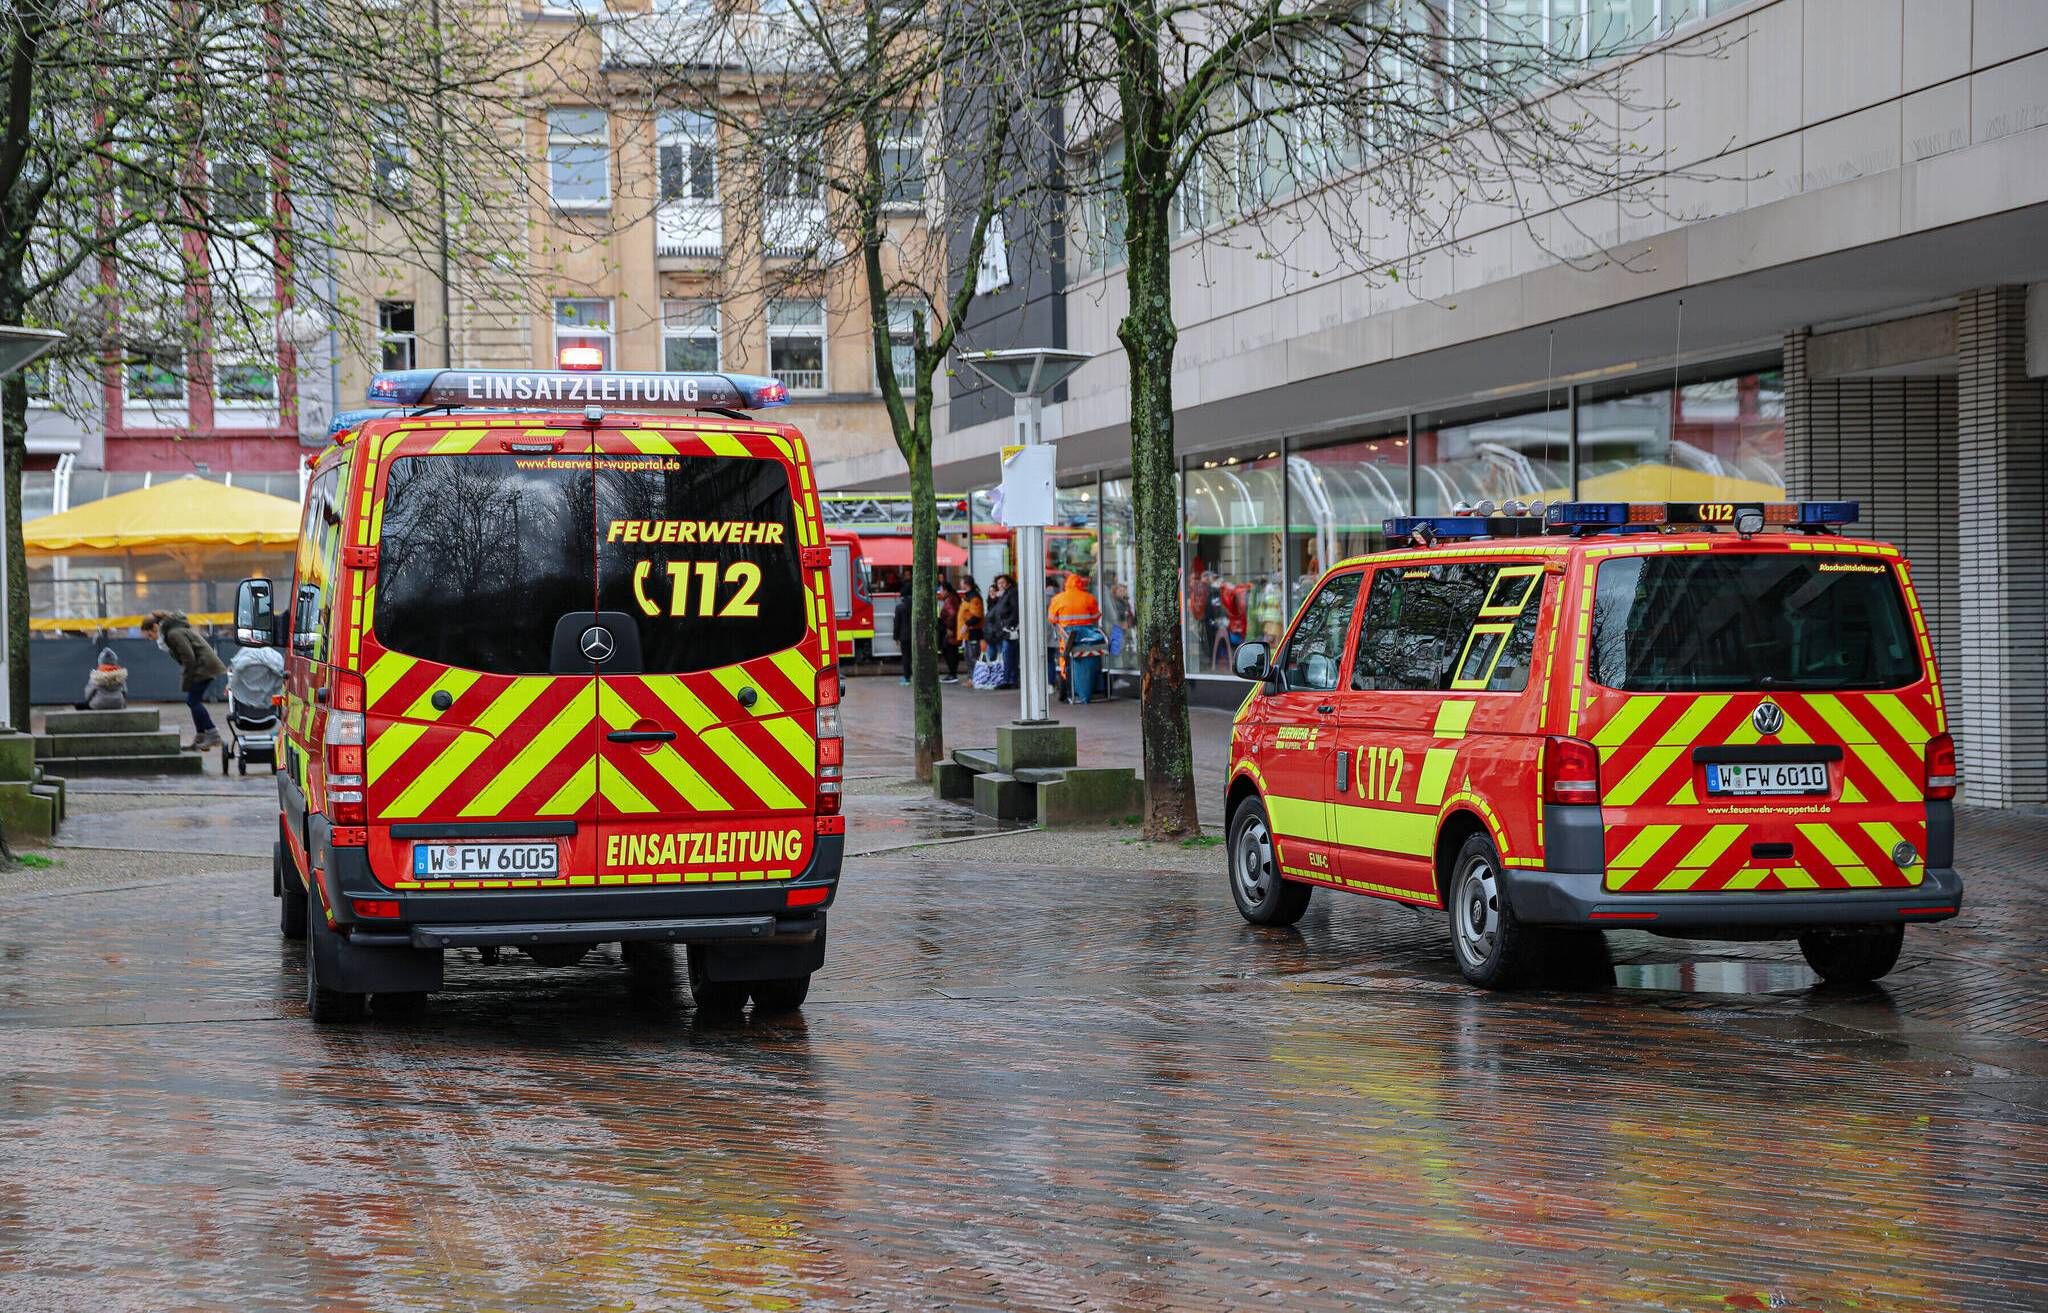 Feuerwehr-Einsatz in der Fußgängerzone​ in Wuppertal-Barmen